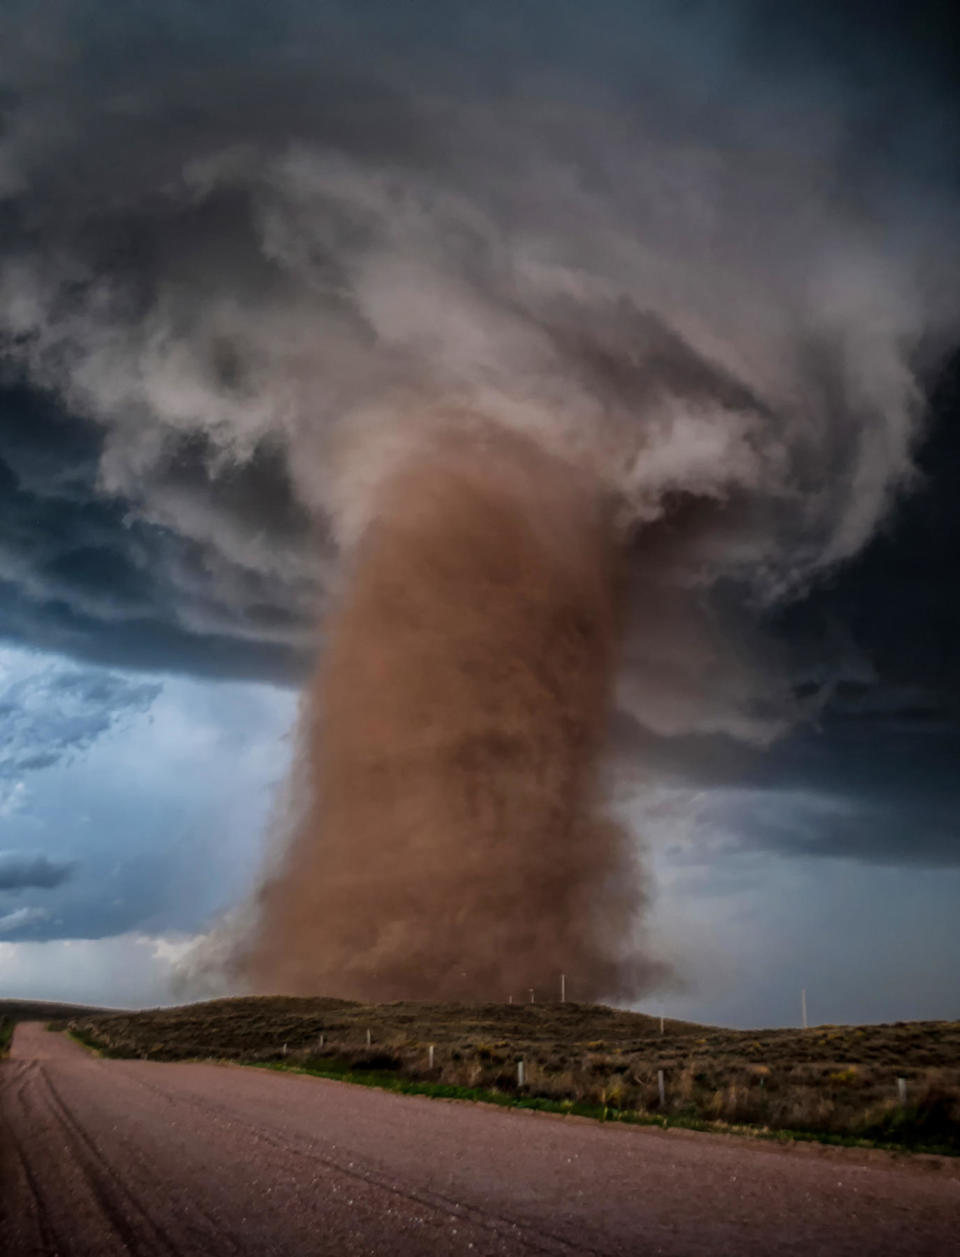 An incredible EF2 tornado tears through a rural Colorado field